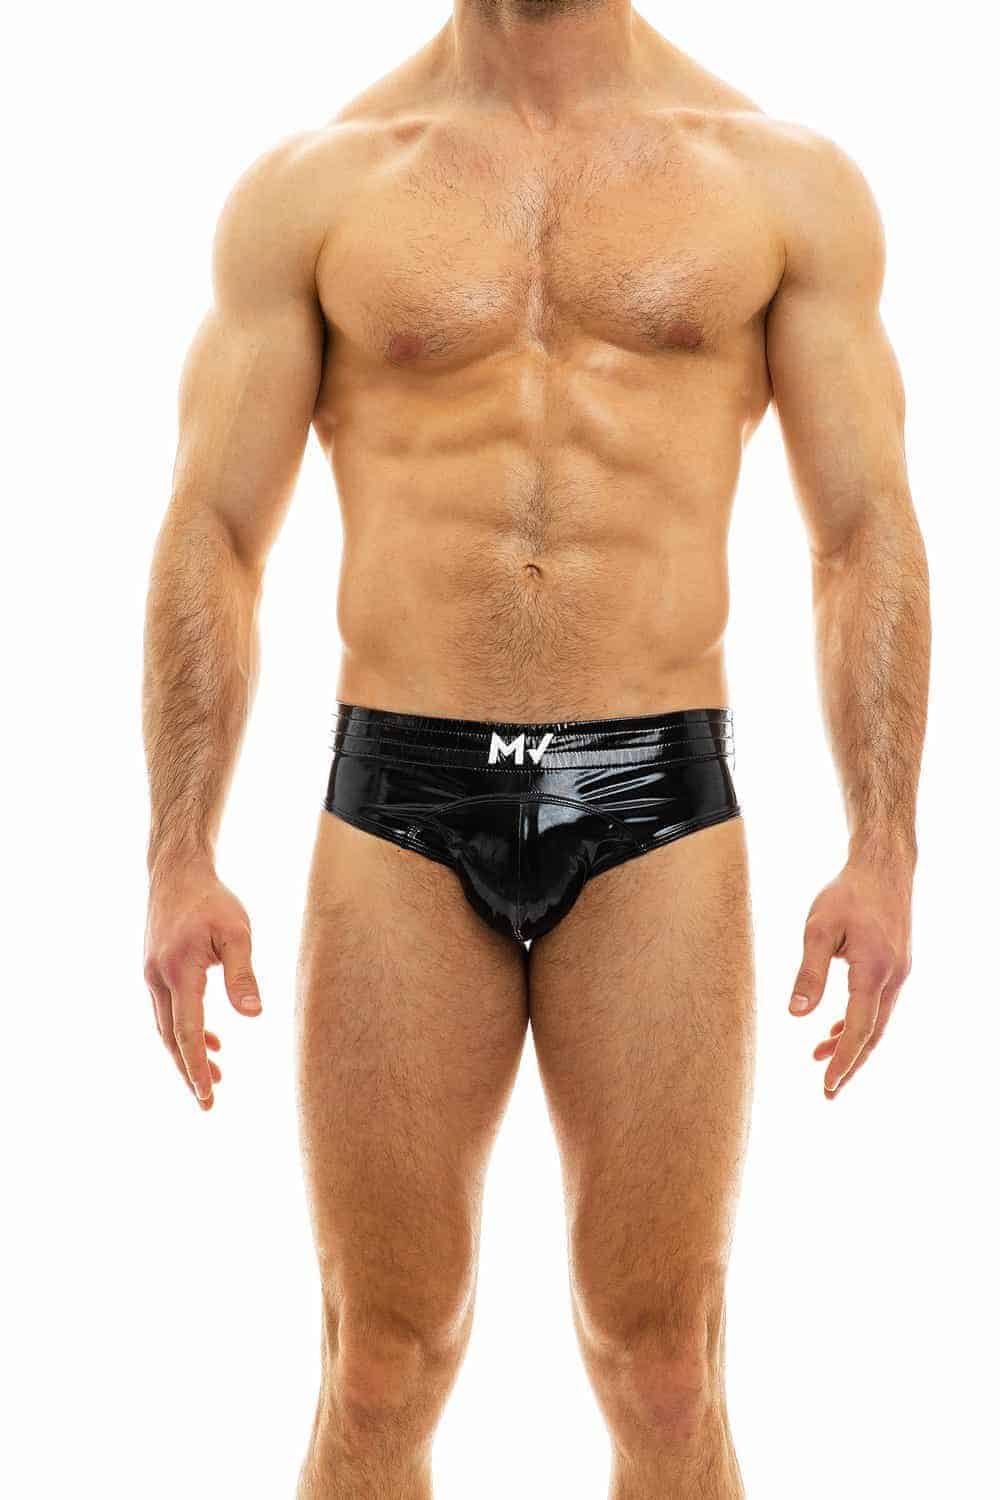 ACSUSS Mens Wet Look Patent Leather Briefs Underwear Clubwear